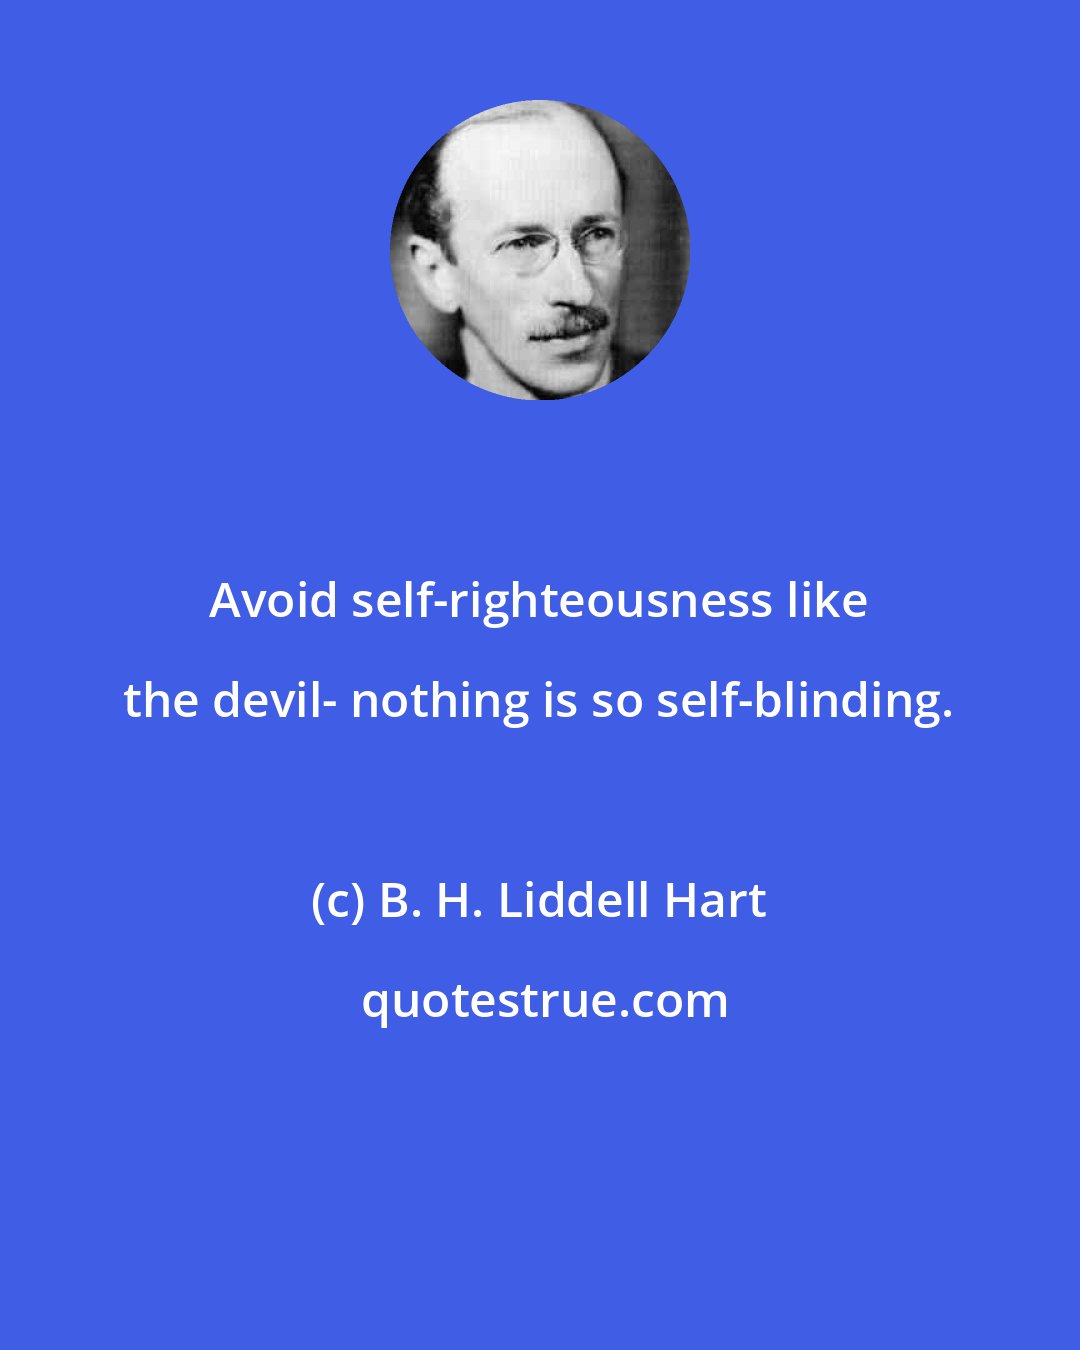 B. H. Liddell Hart: Avoid self-righteousness like the devil- nothing is so self-blinding.